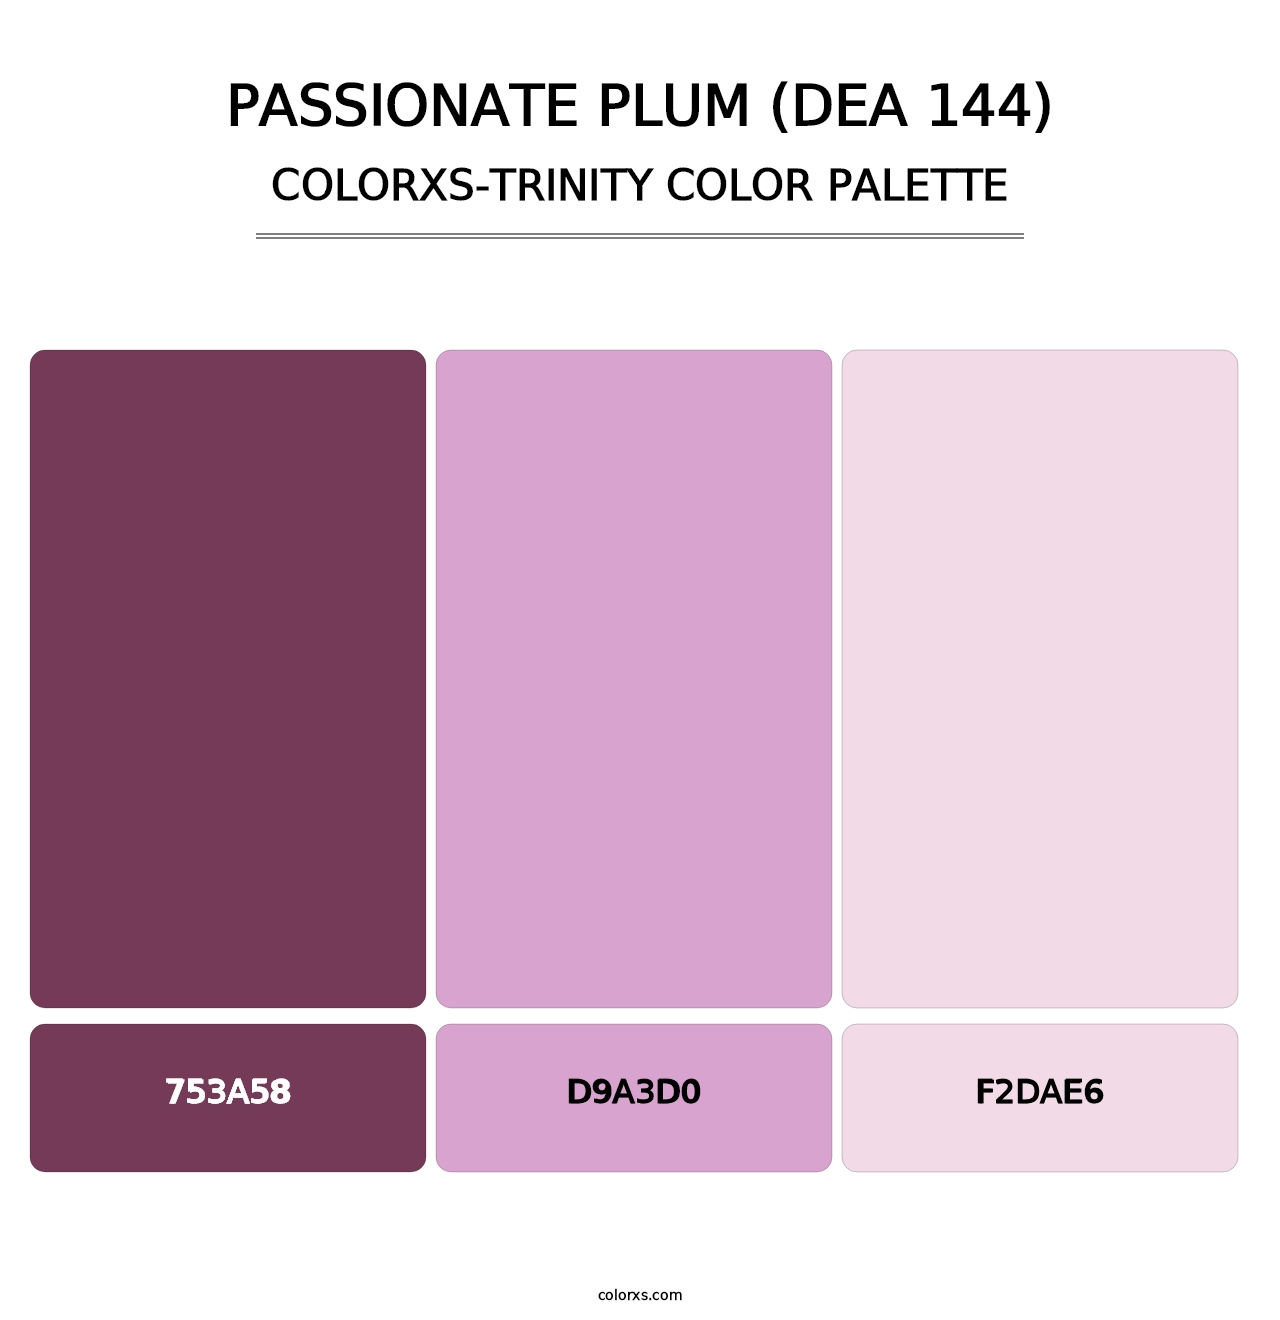 Passionate Plum (DEA 144) - Colorxs Trinity Palette